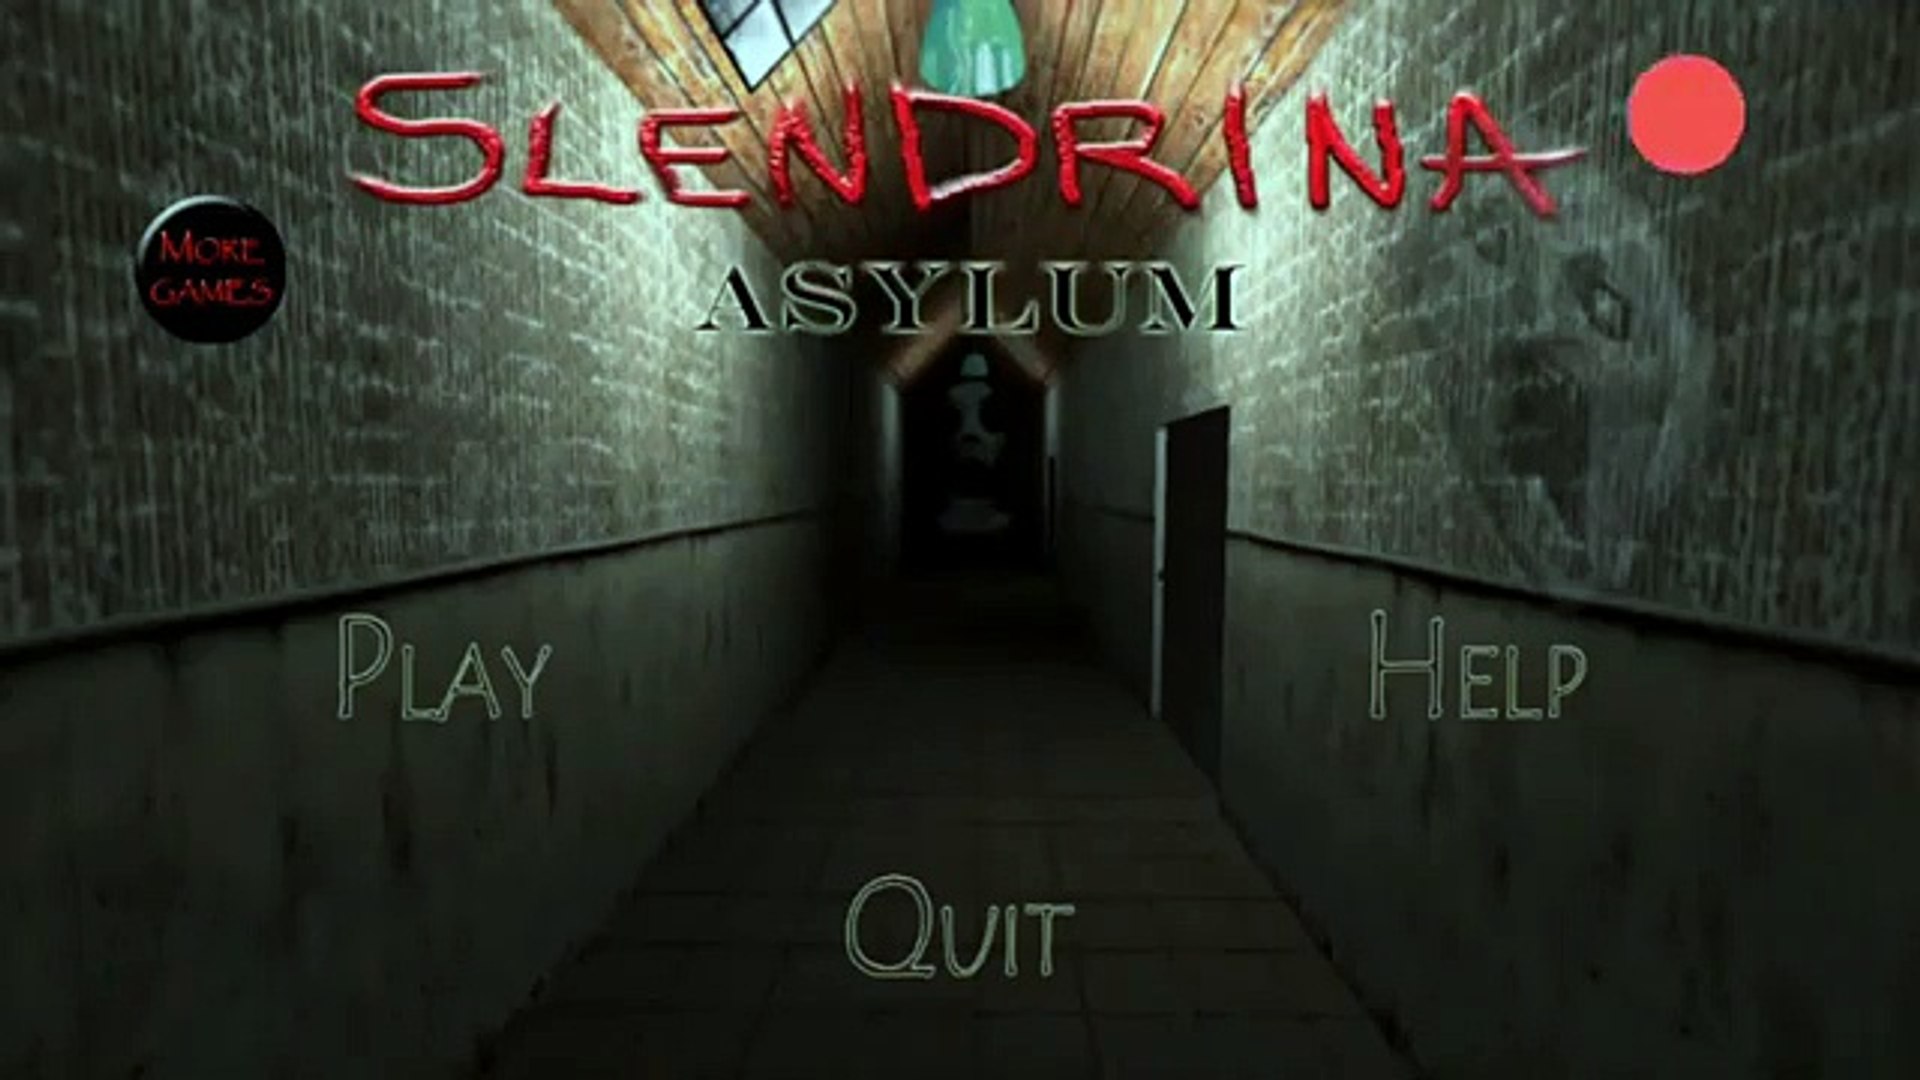 Slendrina: The Cellar, slendrina the cellar 2 HD wallpaper